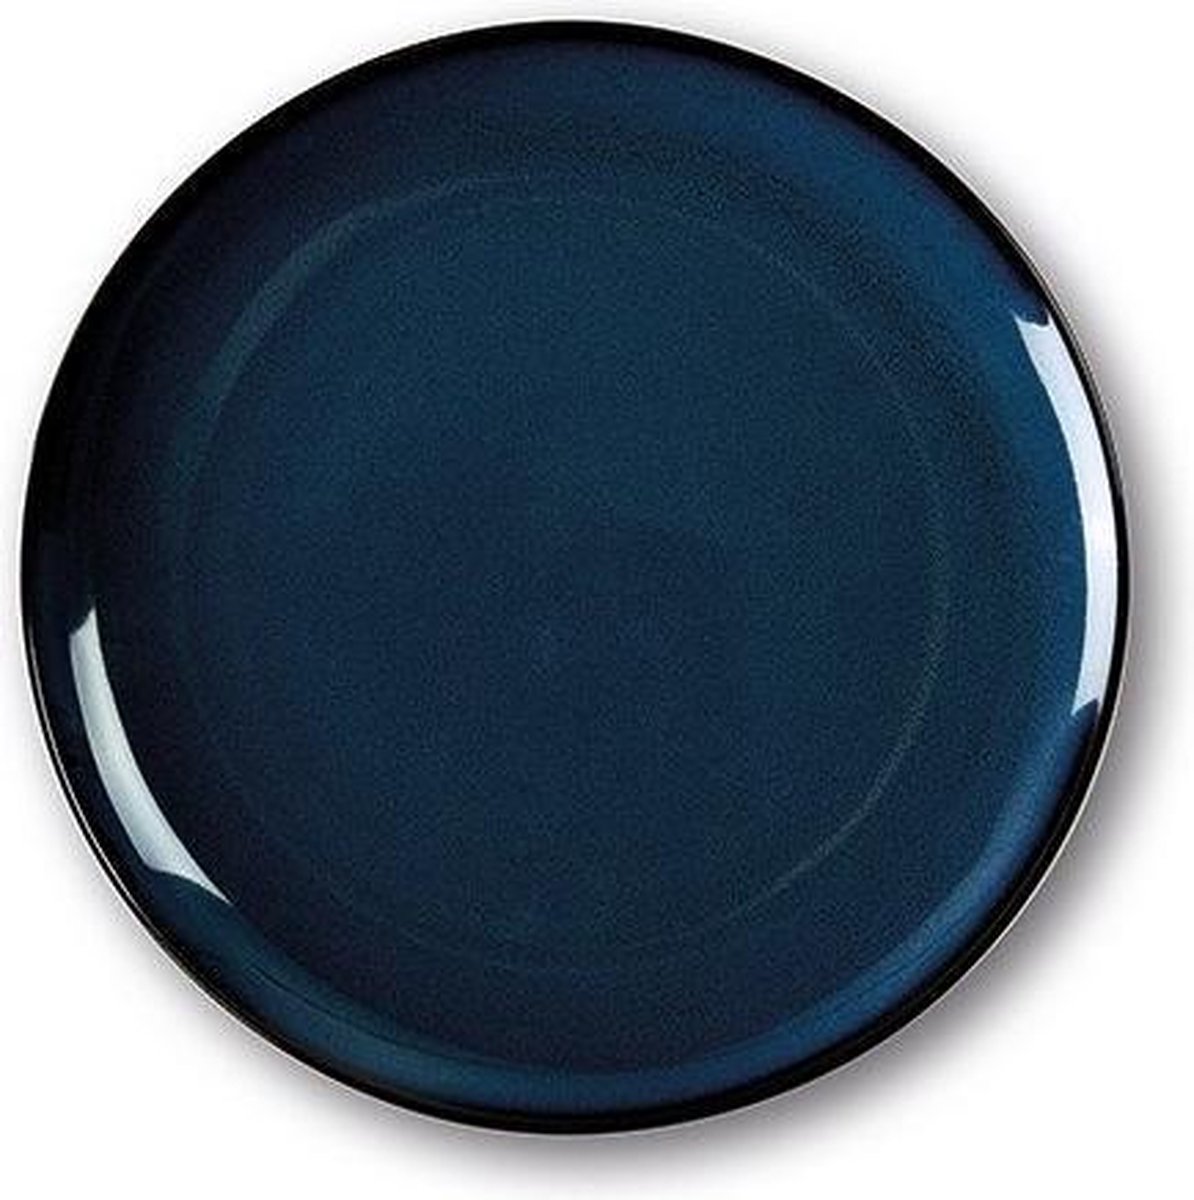 SanoDeGusto - tempcontrol bord - Feestdagen tip - voorgerecht / dessert - koude gerechten - diepvries bestendig - 27cm - donker blauw - bord - 2 stuks